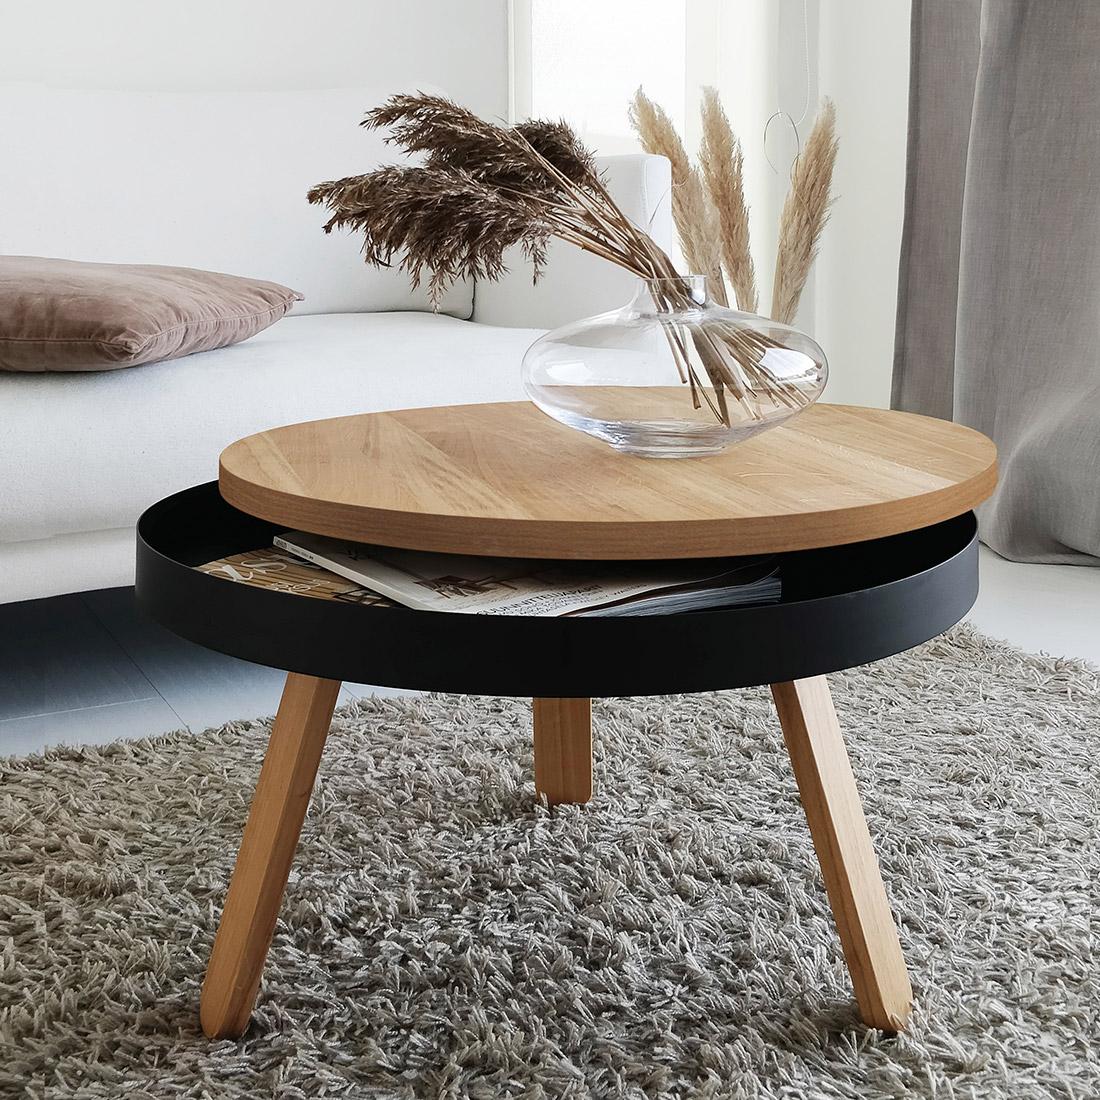 Une table basse ronde qui allie tradition et modernité, s'adaptant à la dynamique de chaque espace domestique.

Le membre de taille moyenne de la famille Batea n'est pas seulement une table d'appoint en bois, il a une fonctionnalité supplémentaire,